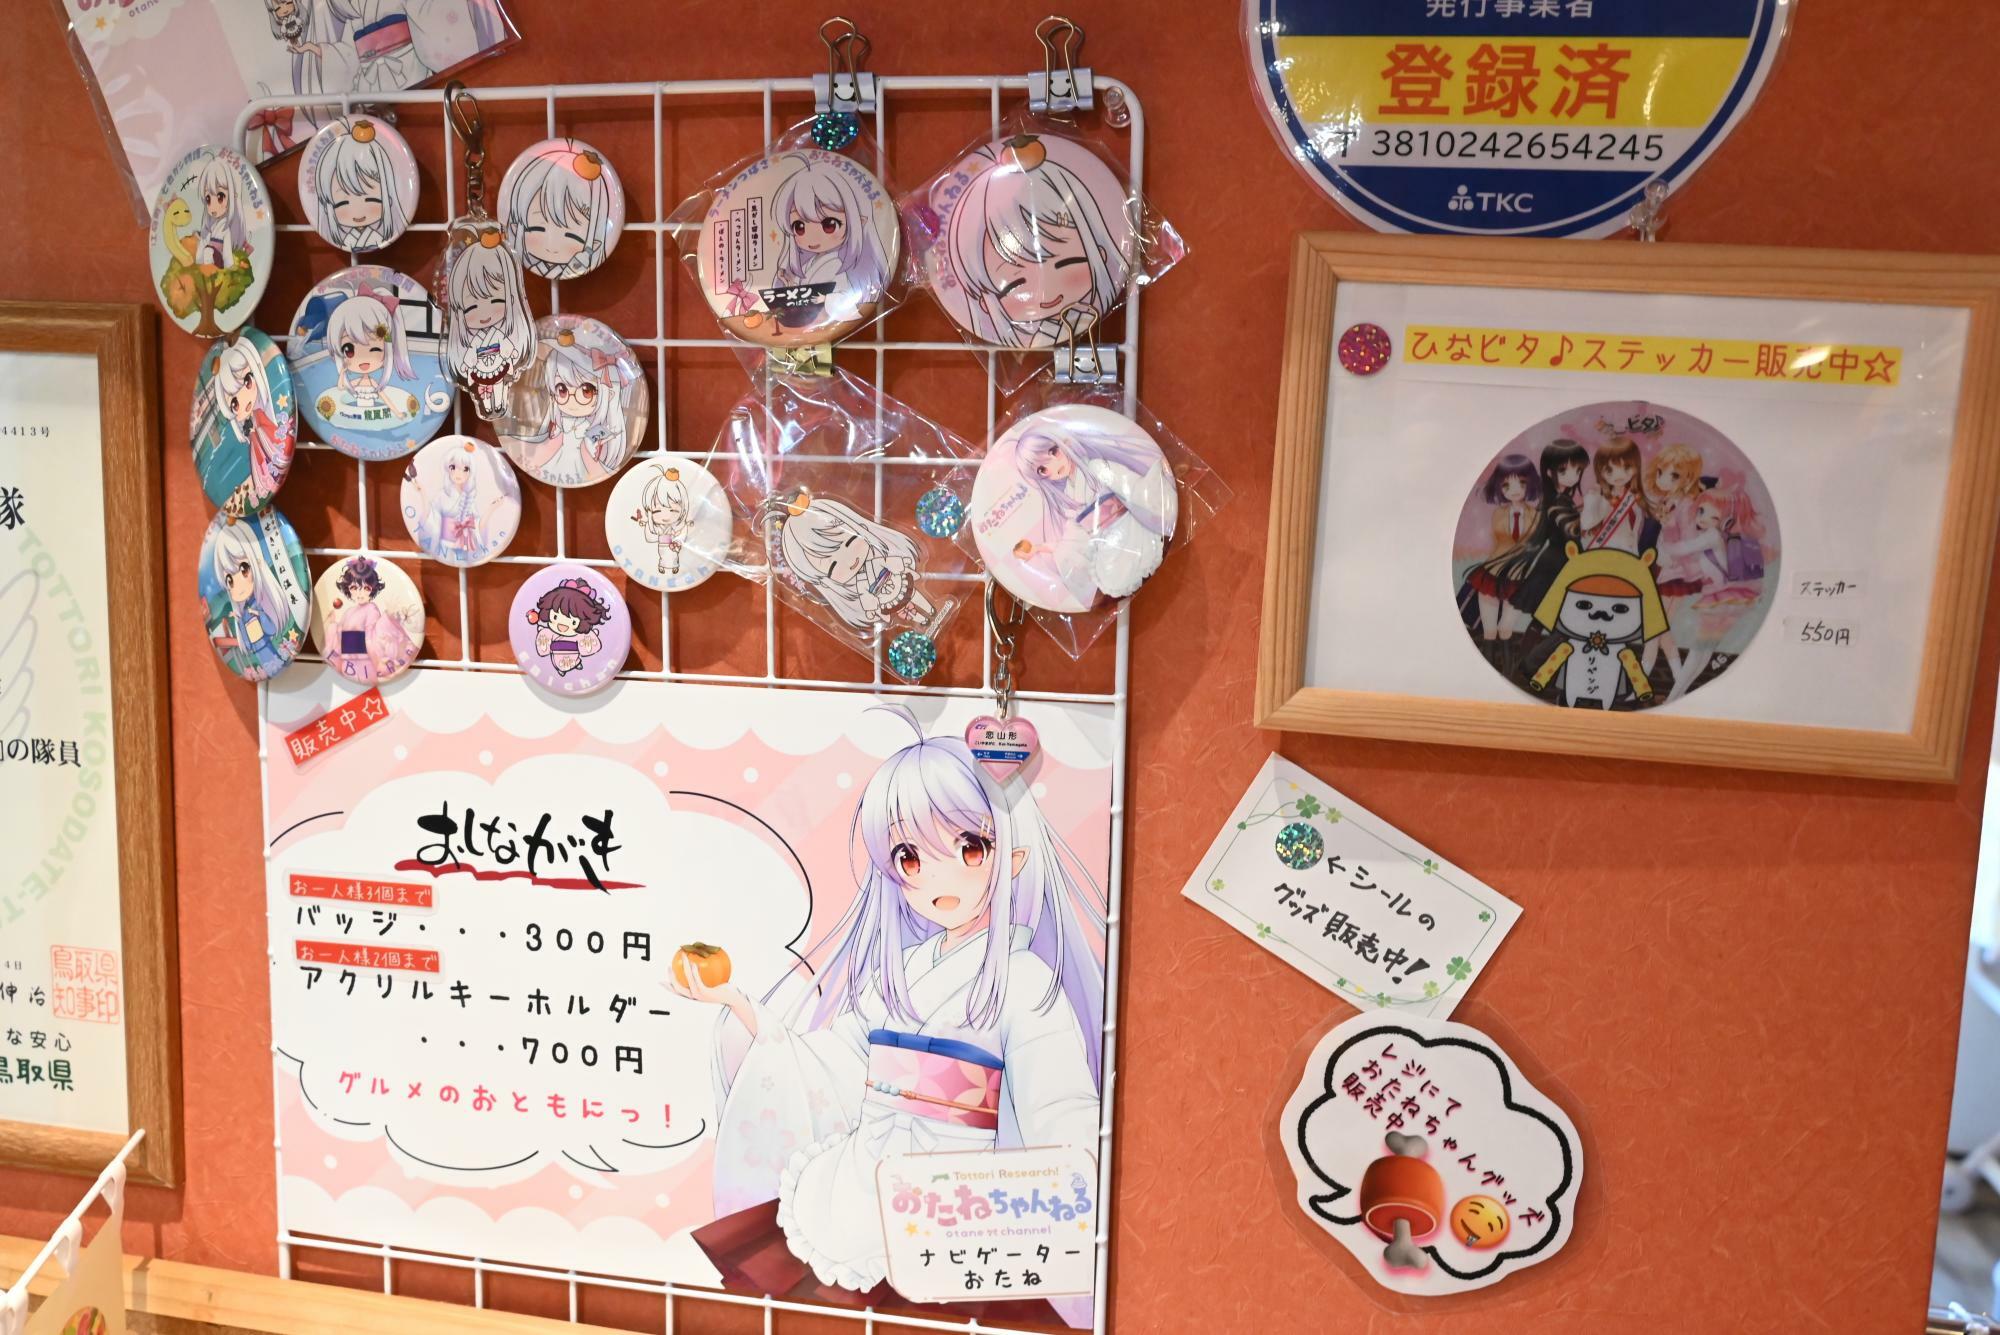 鳥取県倉吉市のラーメン店「ラーメンつばさ」などでは、おたねちゃんのグッズが販売されている。公式通販などはないため、ご当地限定だ